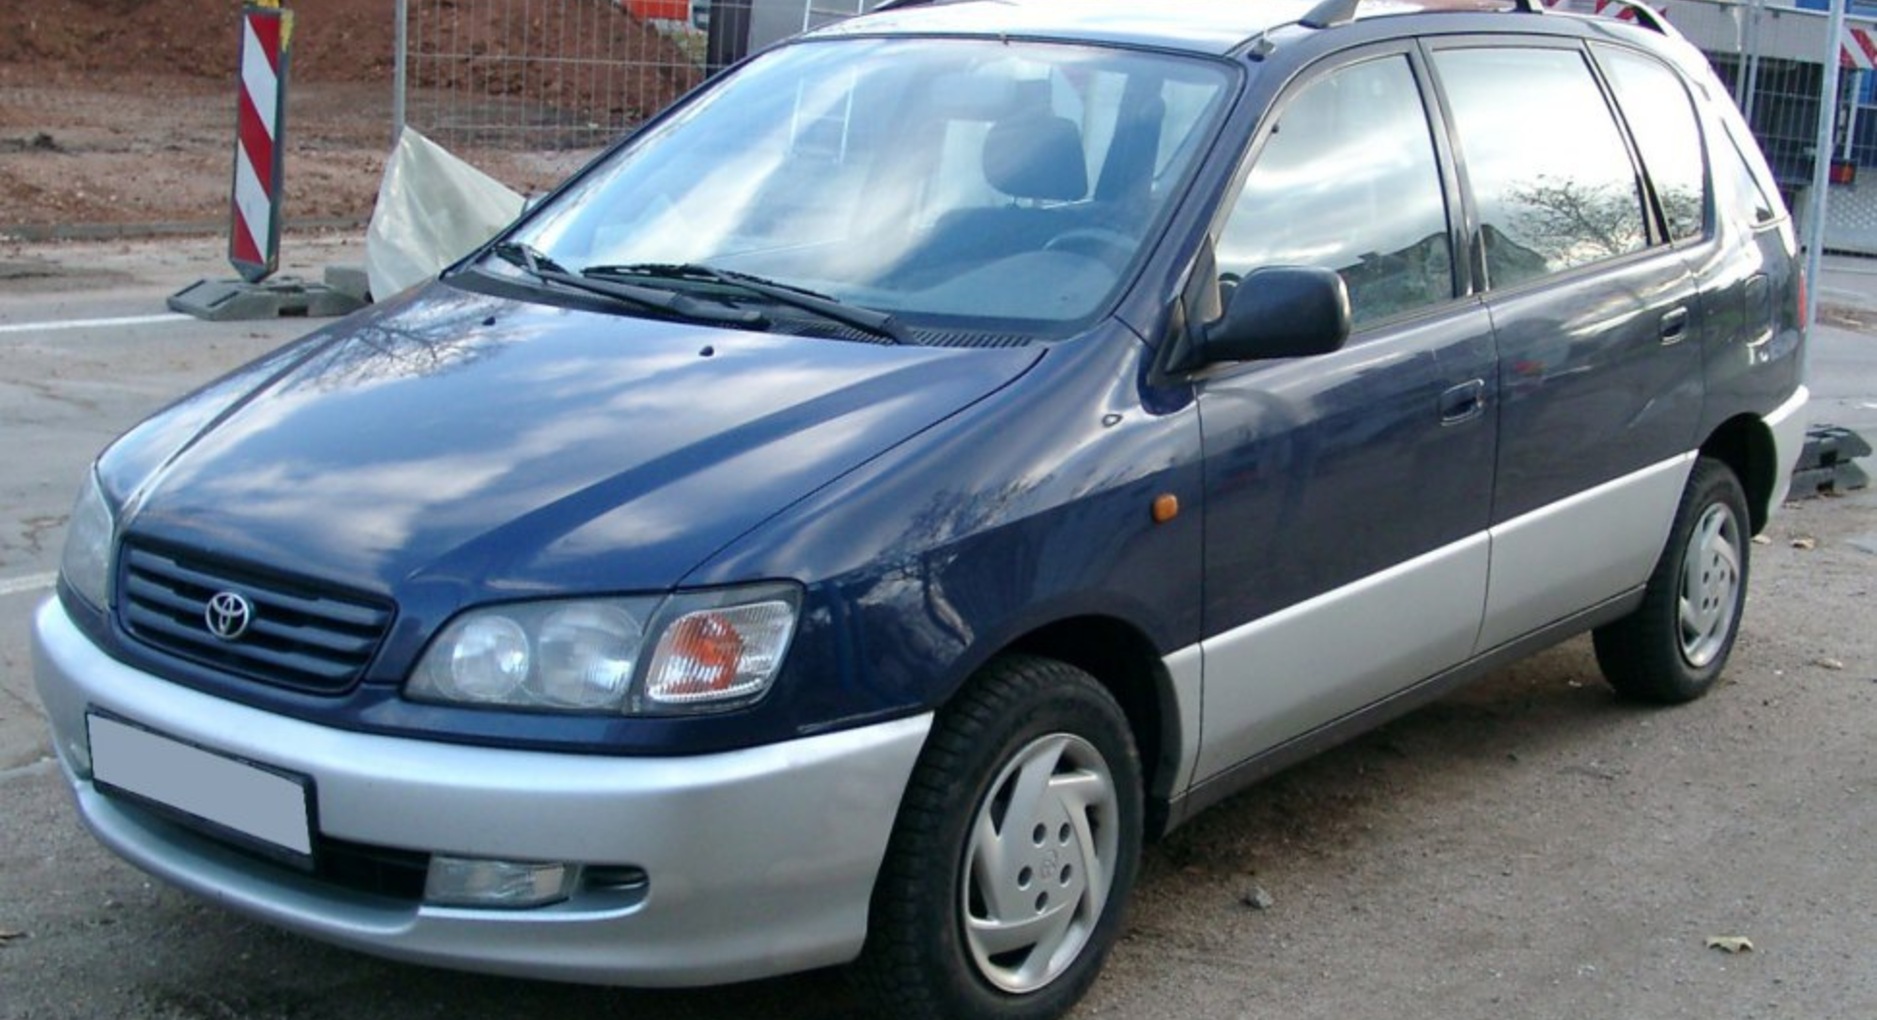 Toyota Picnic (XM1) 2.2 D (CMX10) (90 Hp) 1997, 1998, 1999, 2000, 2001 